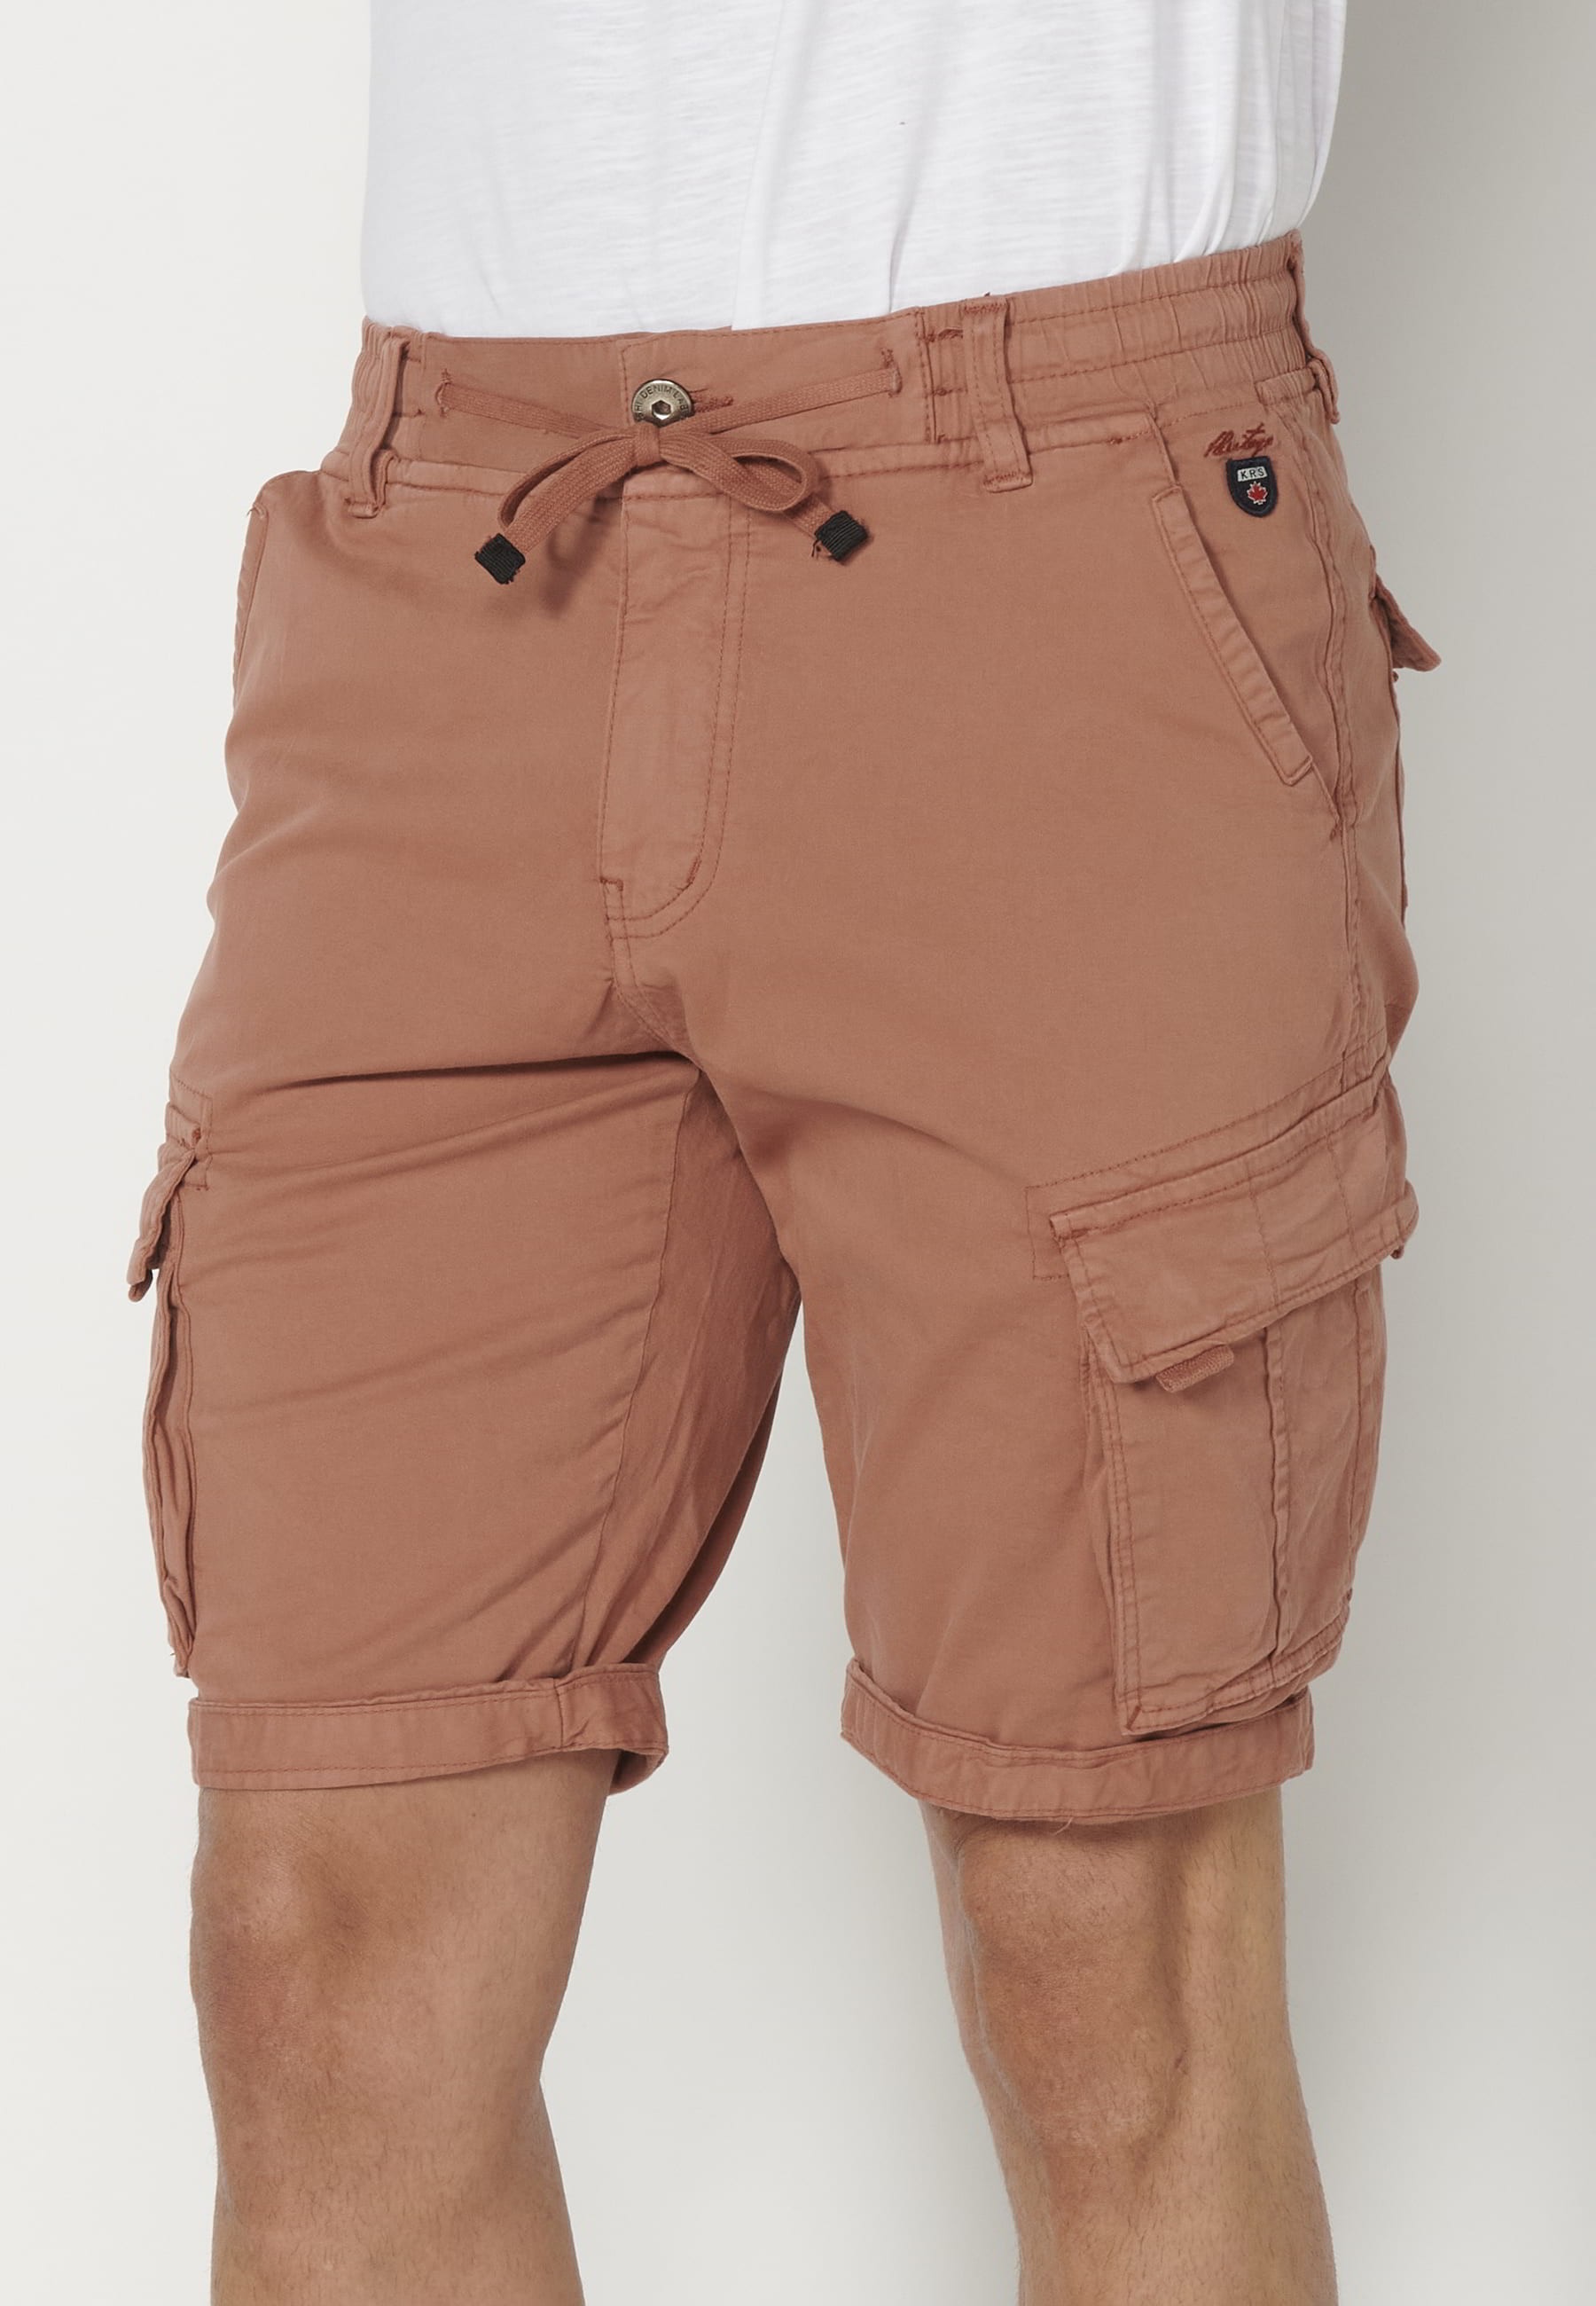 Pantalons curts Bermuda estil càrrec color Teula per a Home